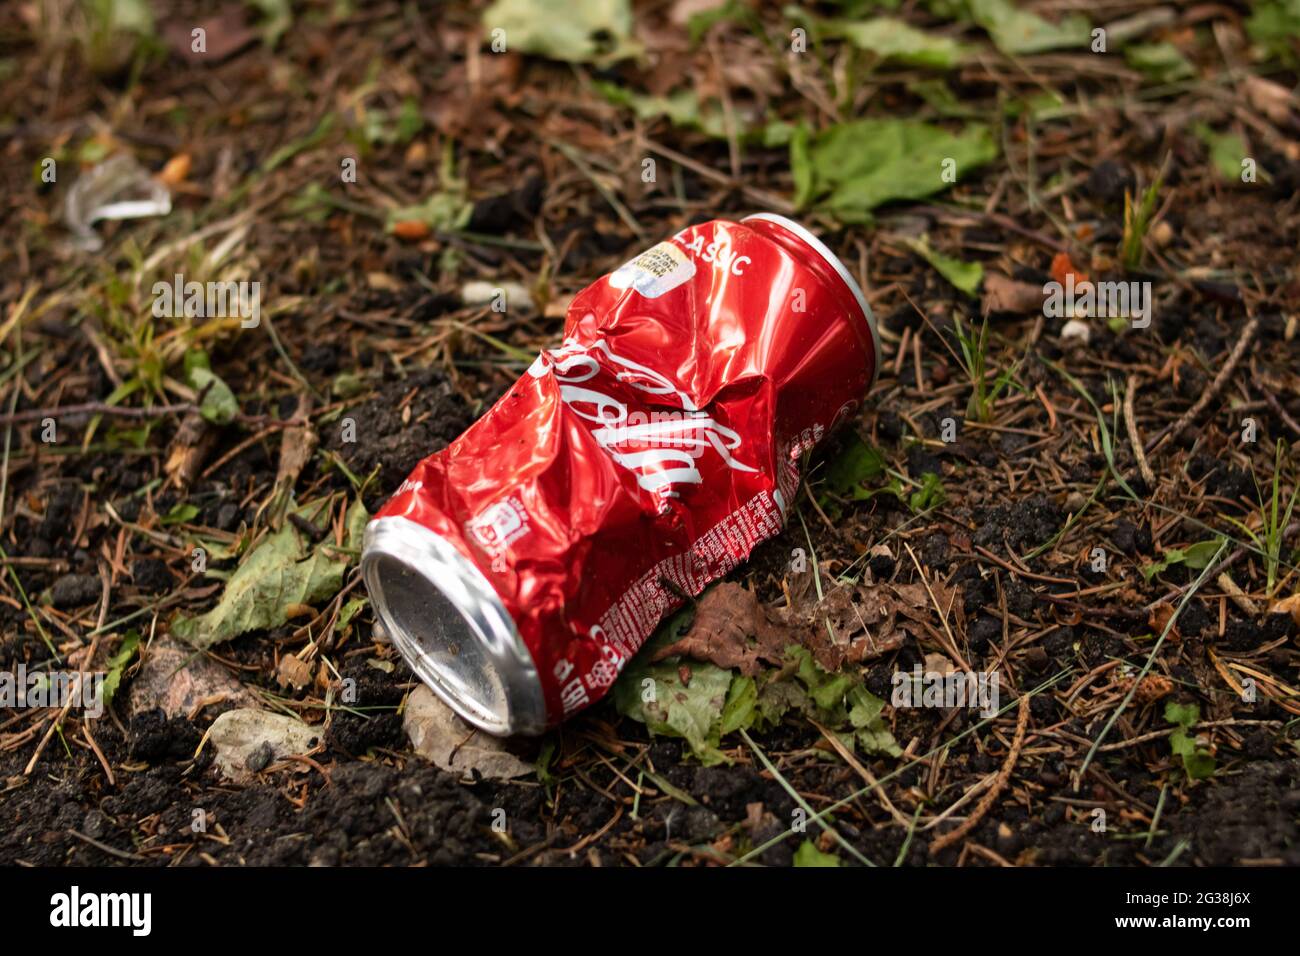 Coca-Cola pfeift mit Einführung von Mini-Dosen auf den Umweltschutz - das  wird scharf kritisiert